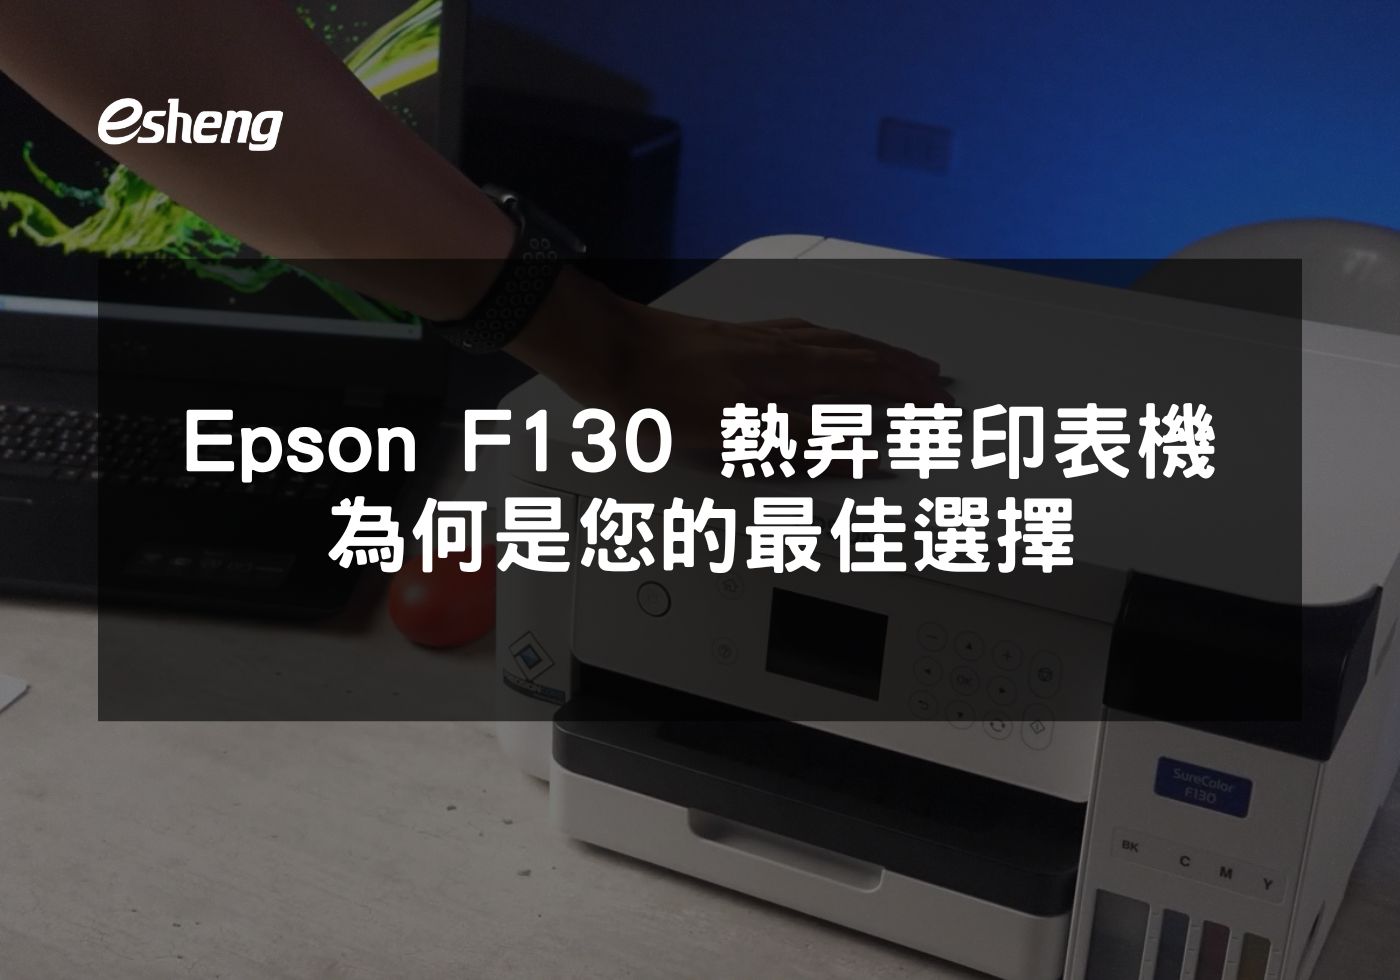 如何利用 EPSON F130 提升商業印刷品質與效率